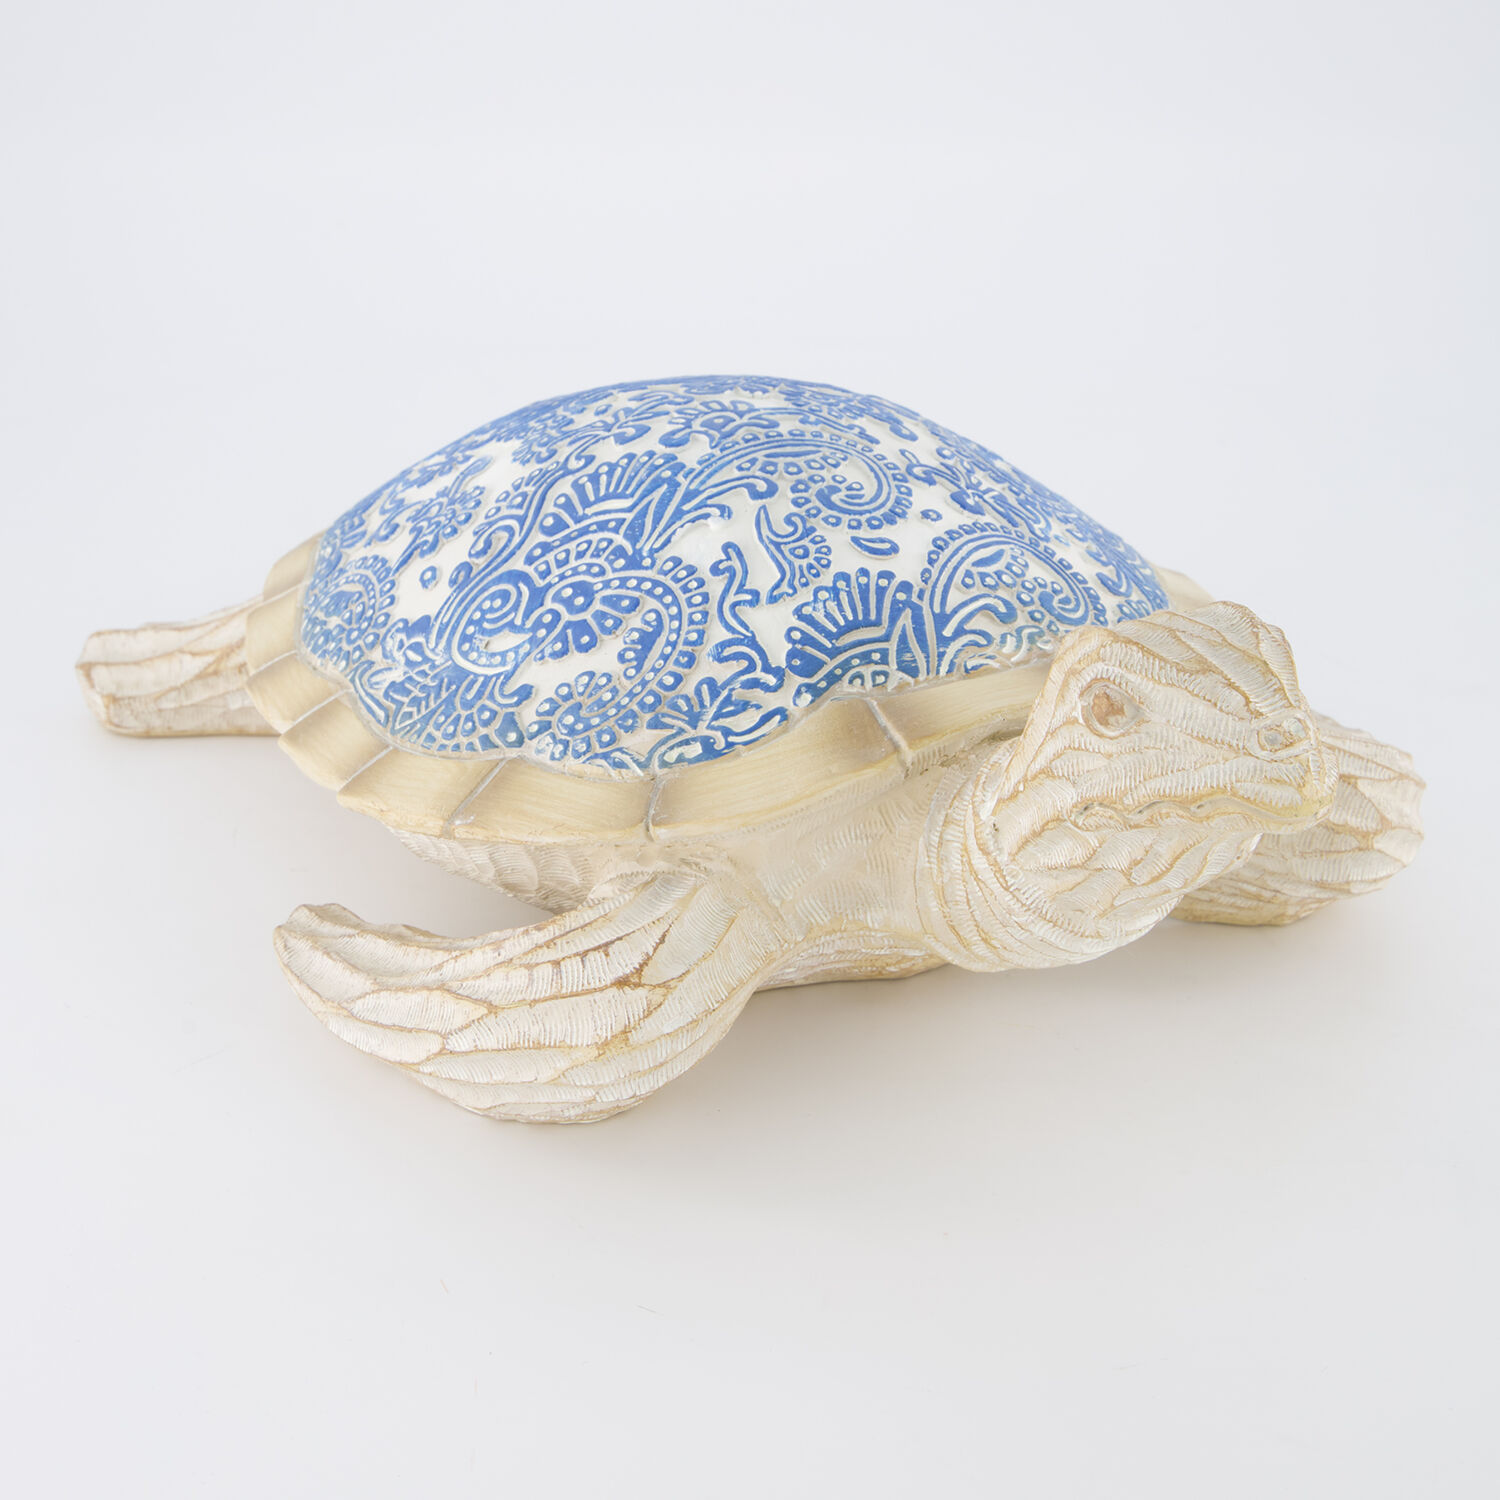 раскраски galt транспор Декоративная фигурка сине-бежевого цвета в виде морской черепахи 12х37см Galt International